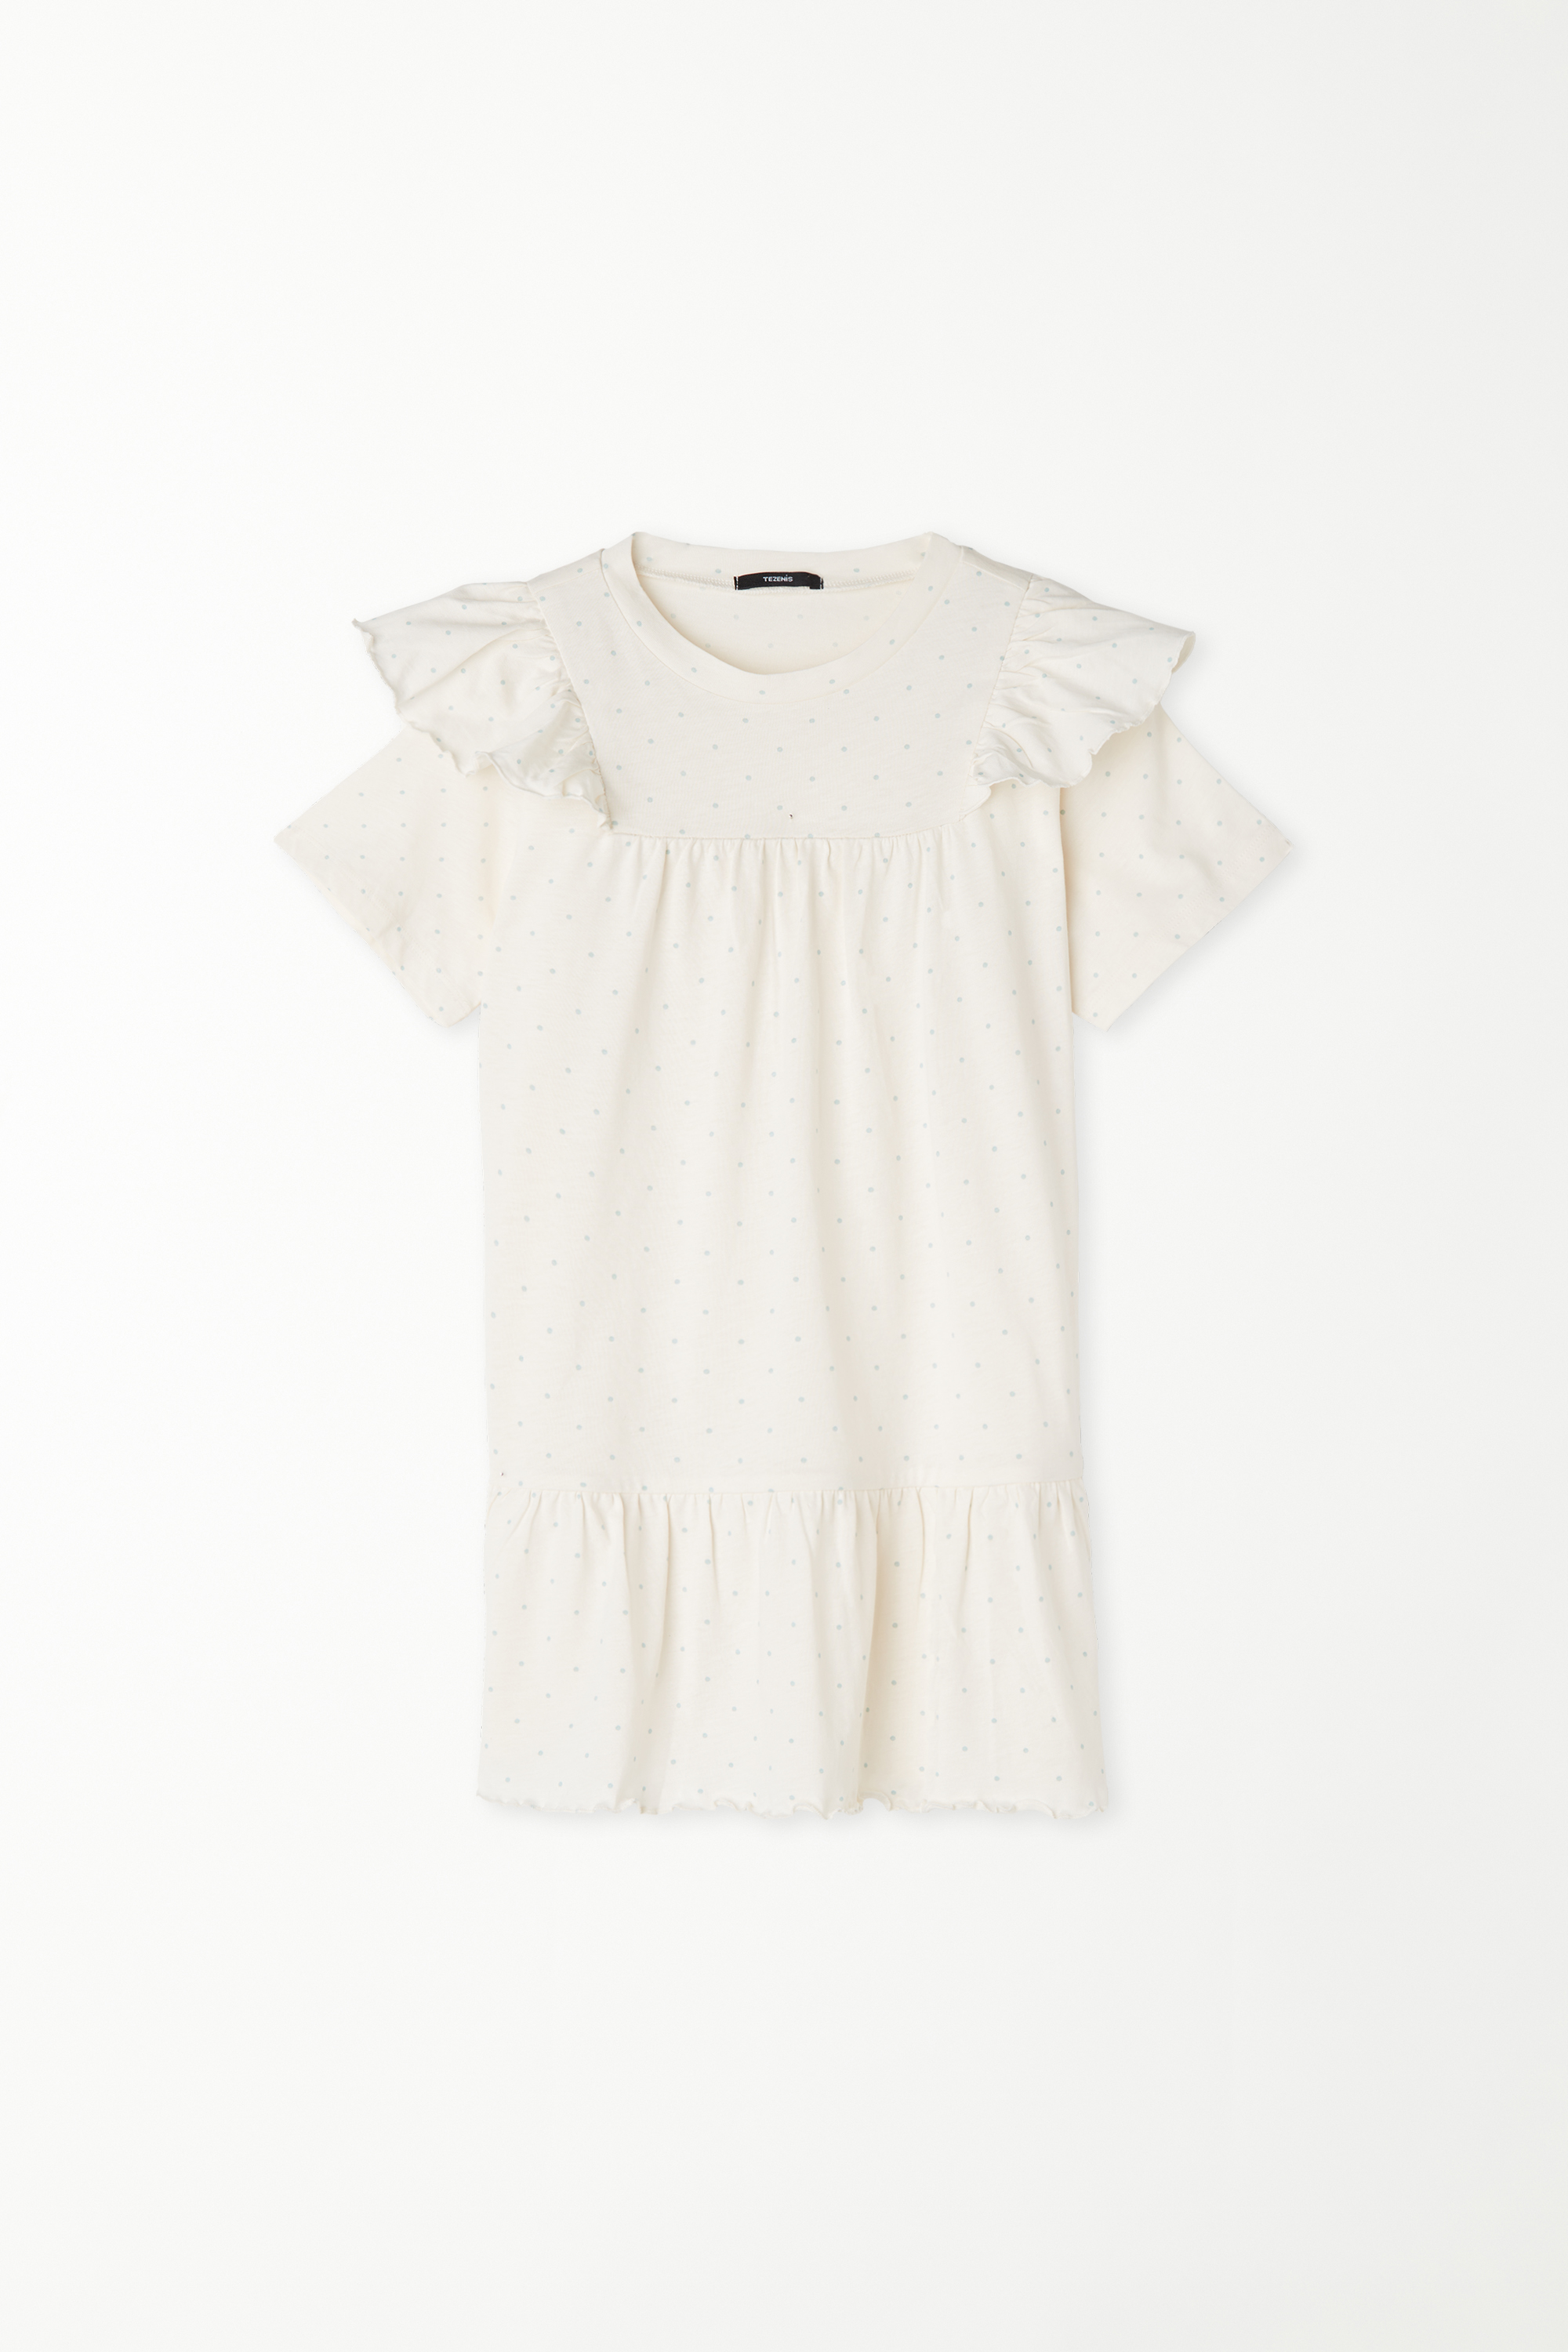 Nachthemd aus Baumwolle mit kurzen Ärmeln, Volant und Tupfenprint